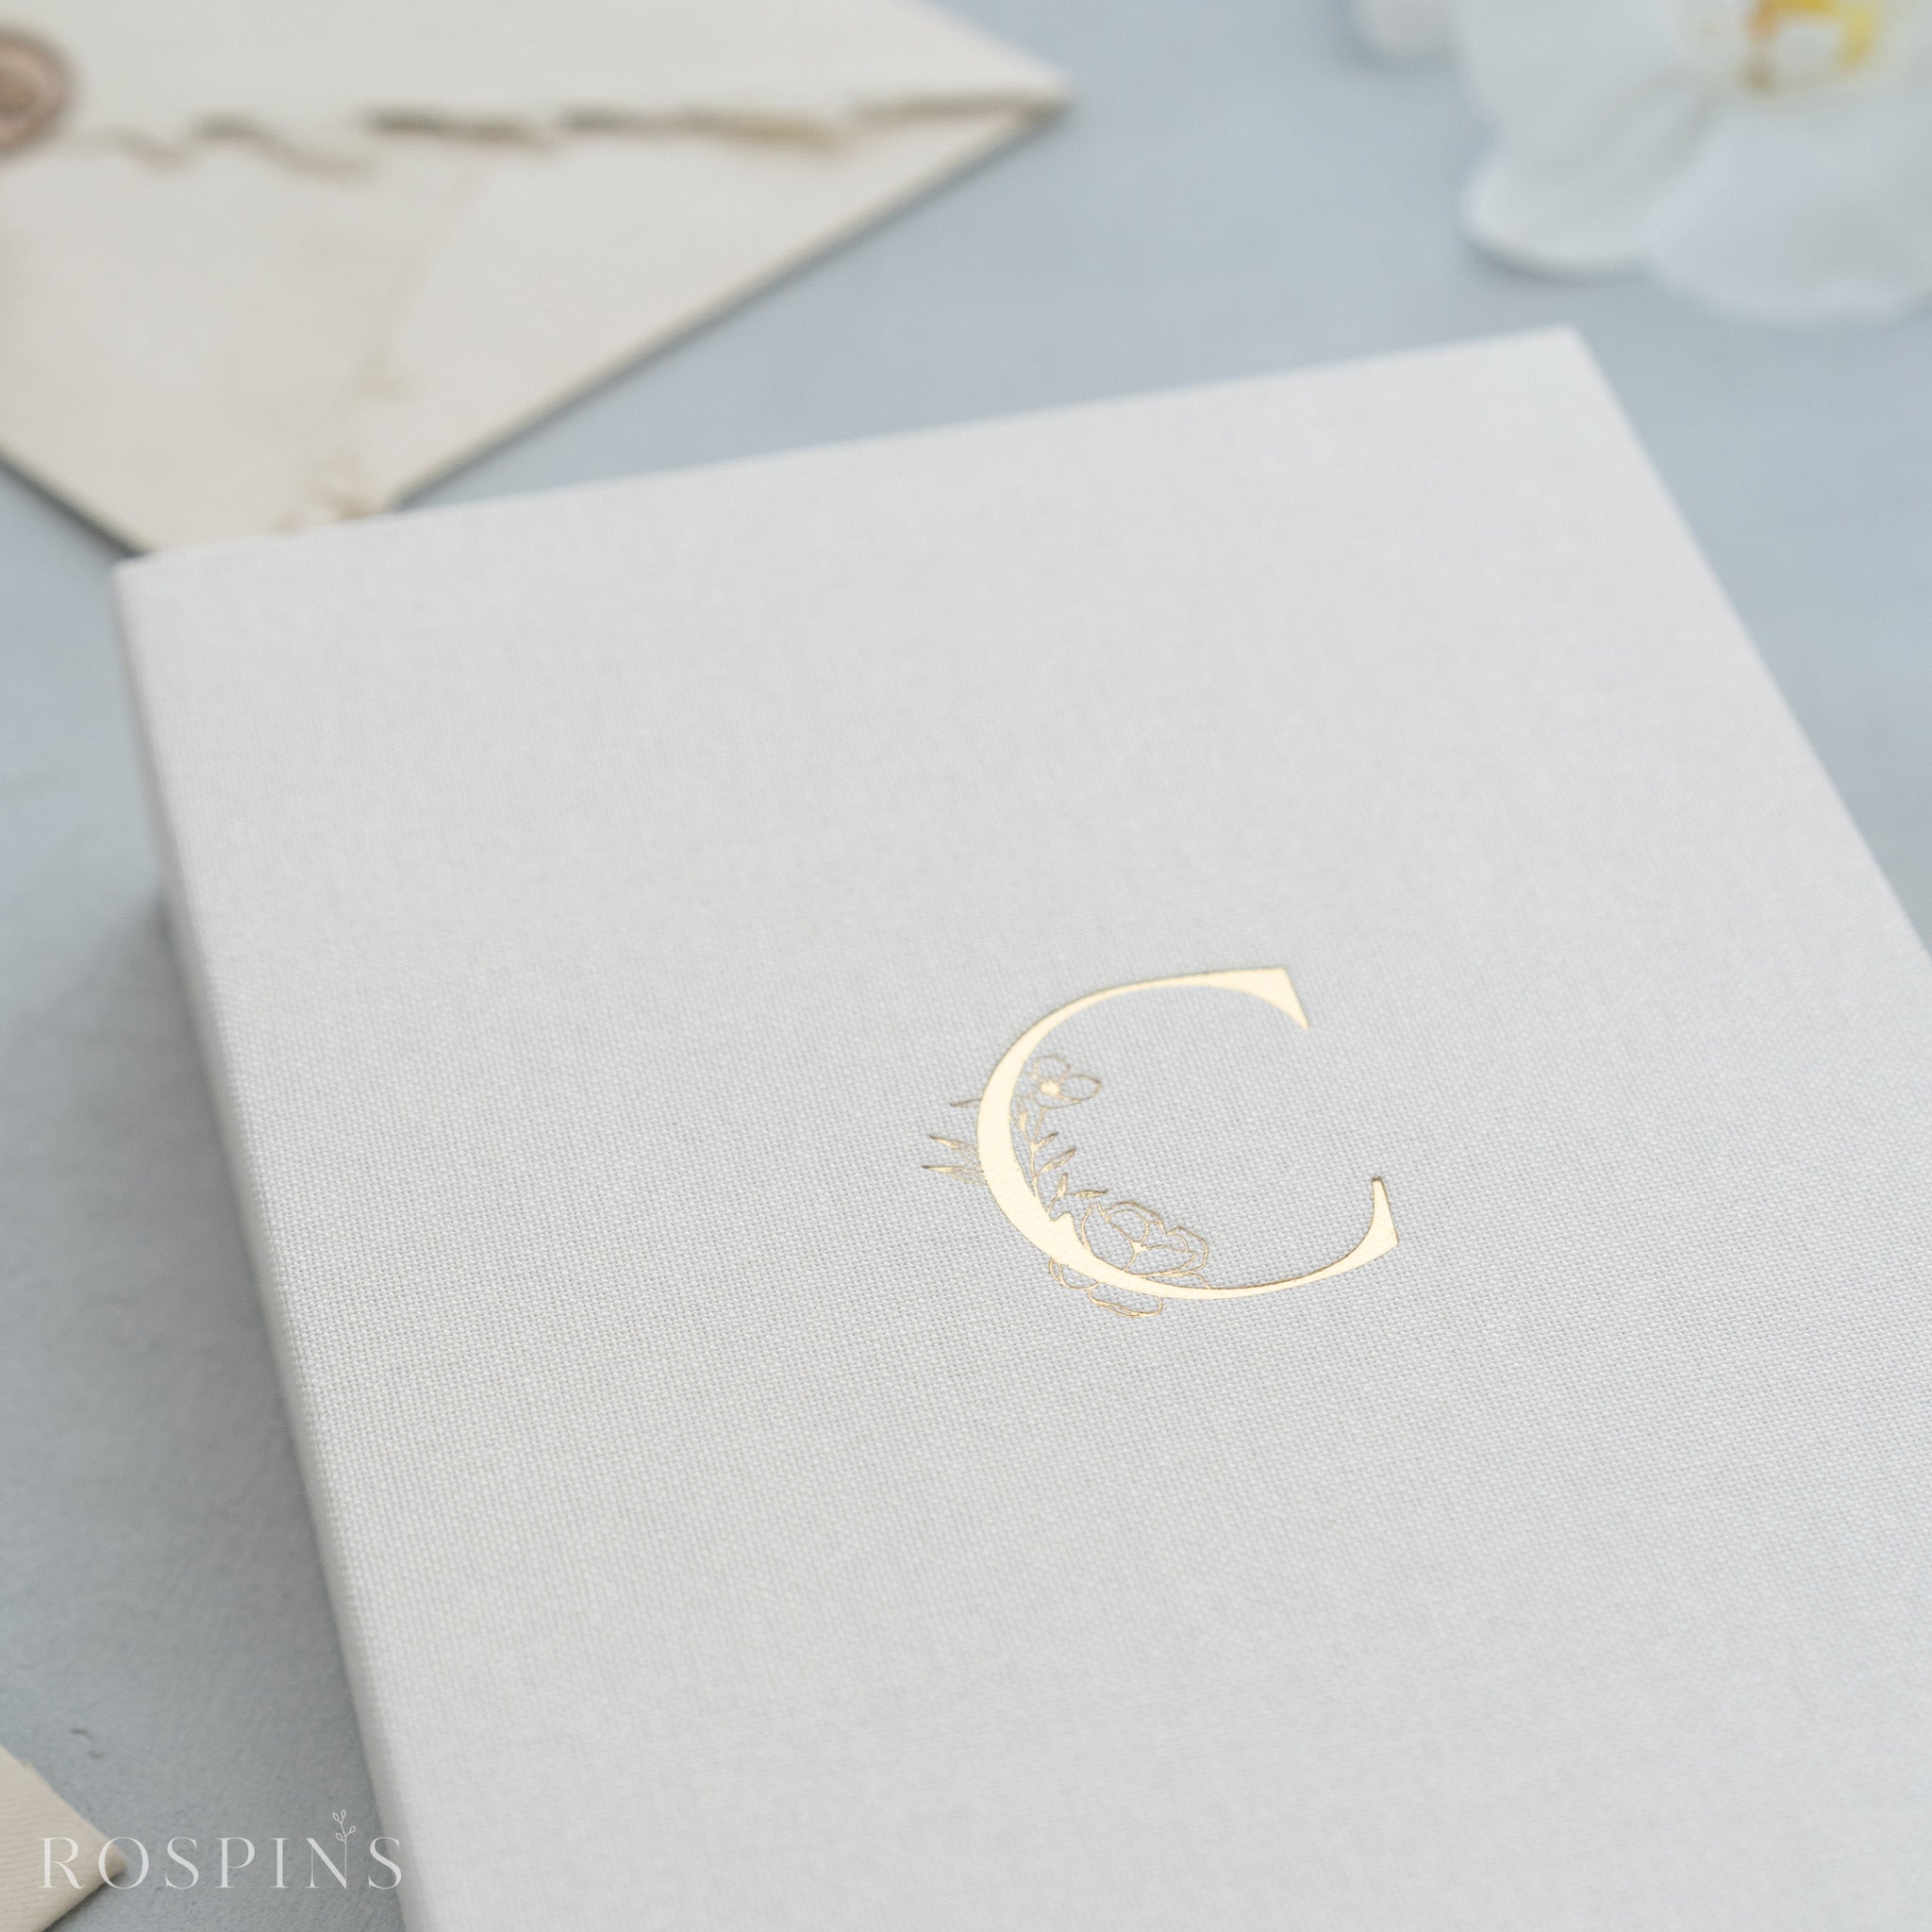 Linen Invitation Box - Creamy White